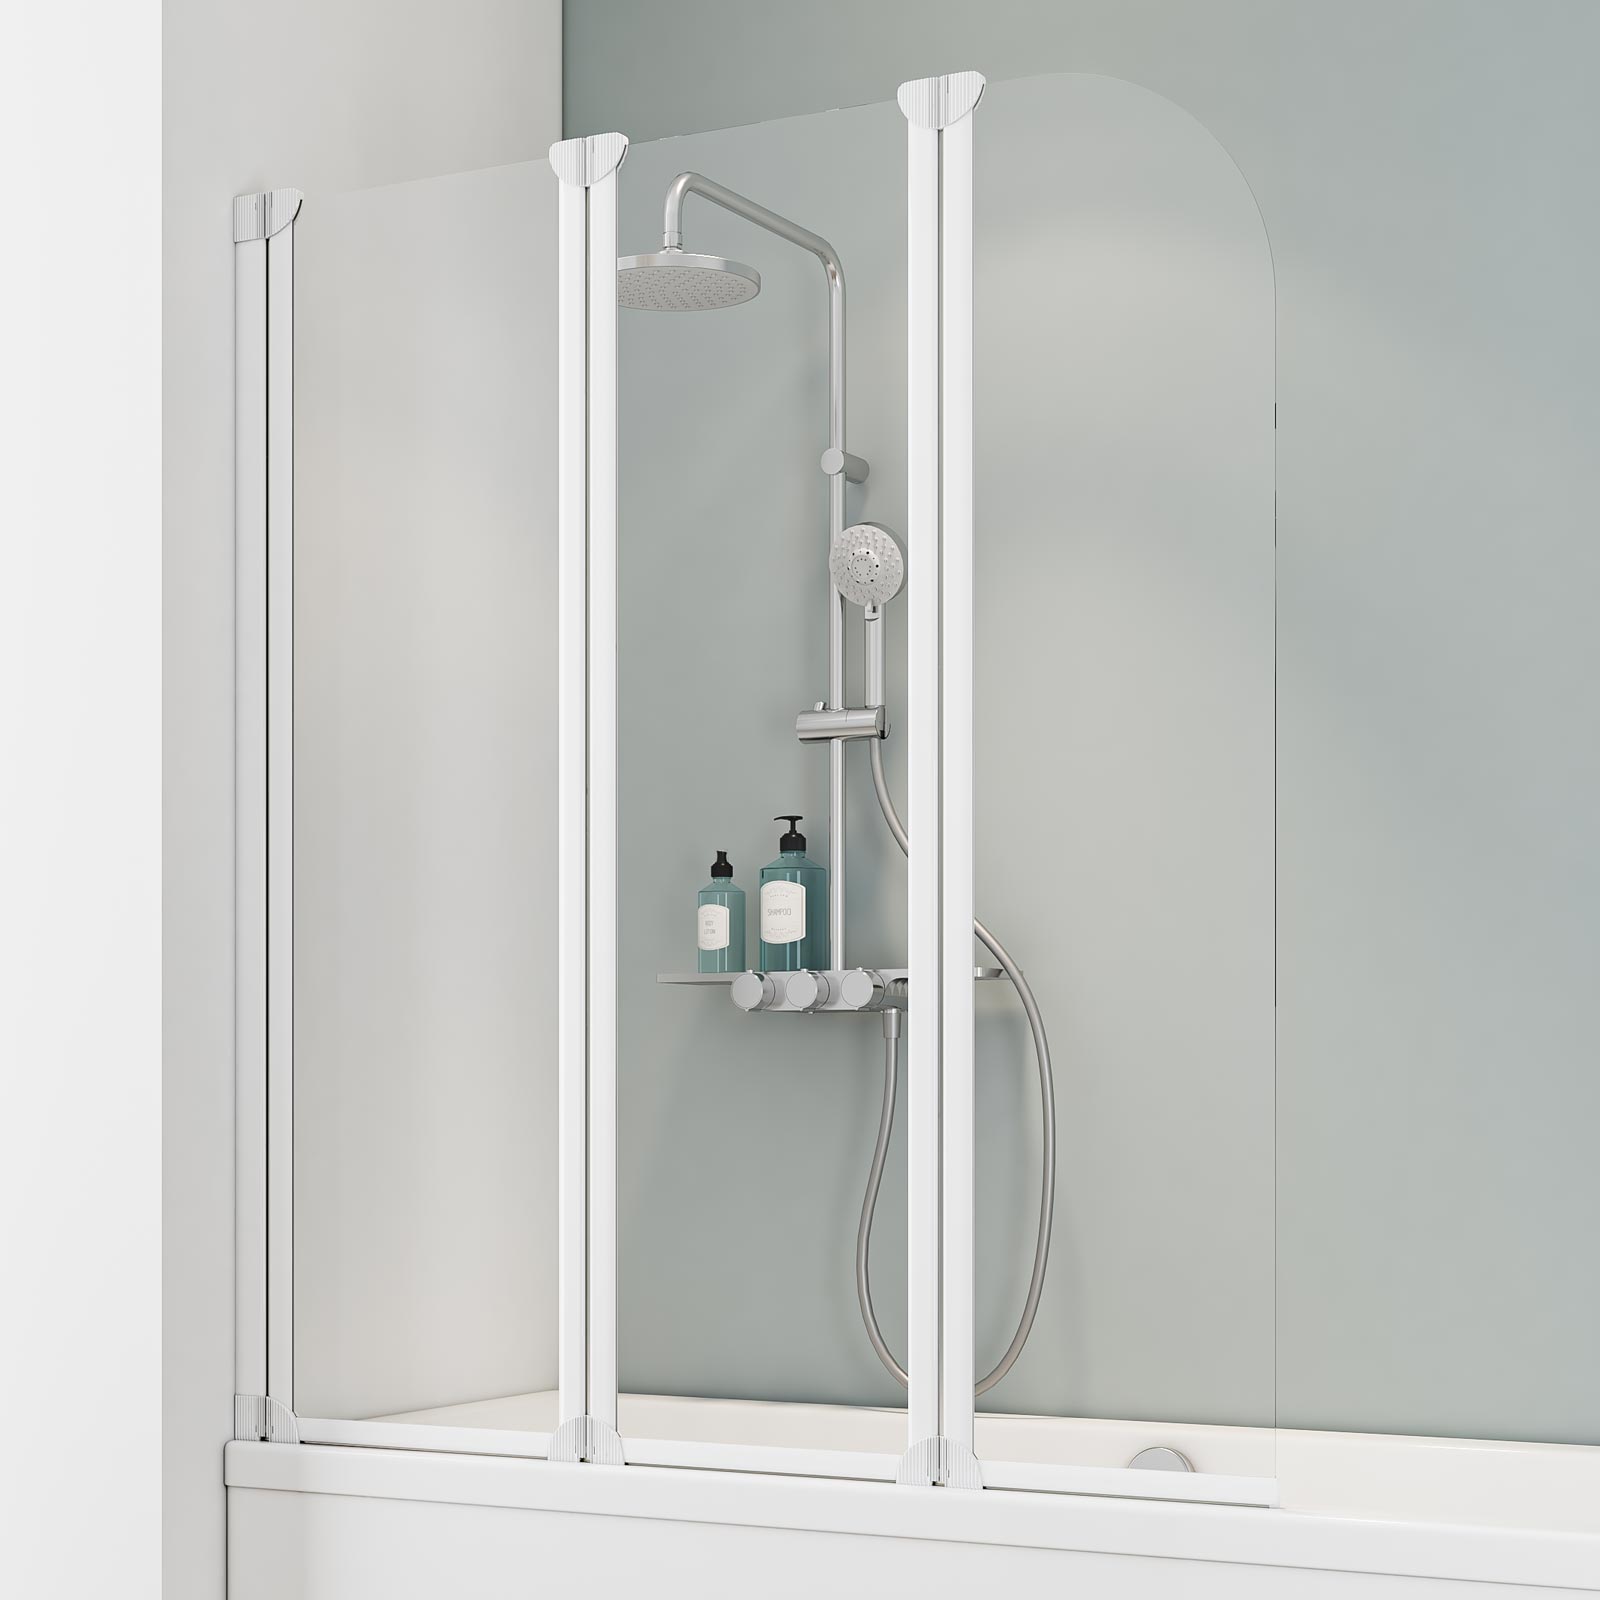 Schulte pare-baignoire mobile rabattable 125 x 140 cm, paroi de baignoire 3 volets, écran de baignoire pivotant, profilé blanc, verre transparent 0